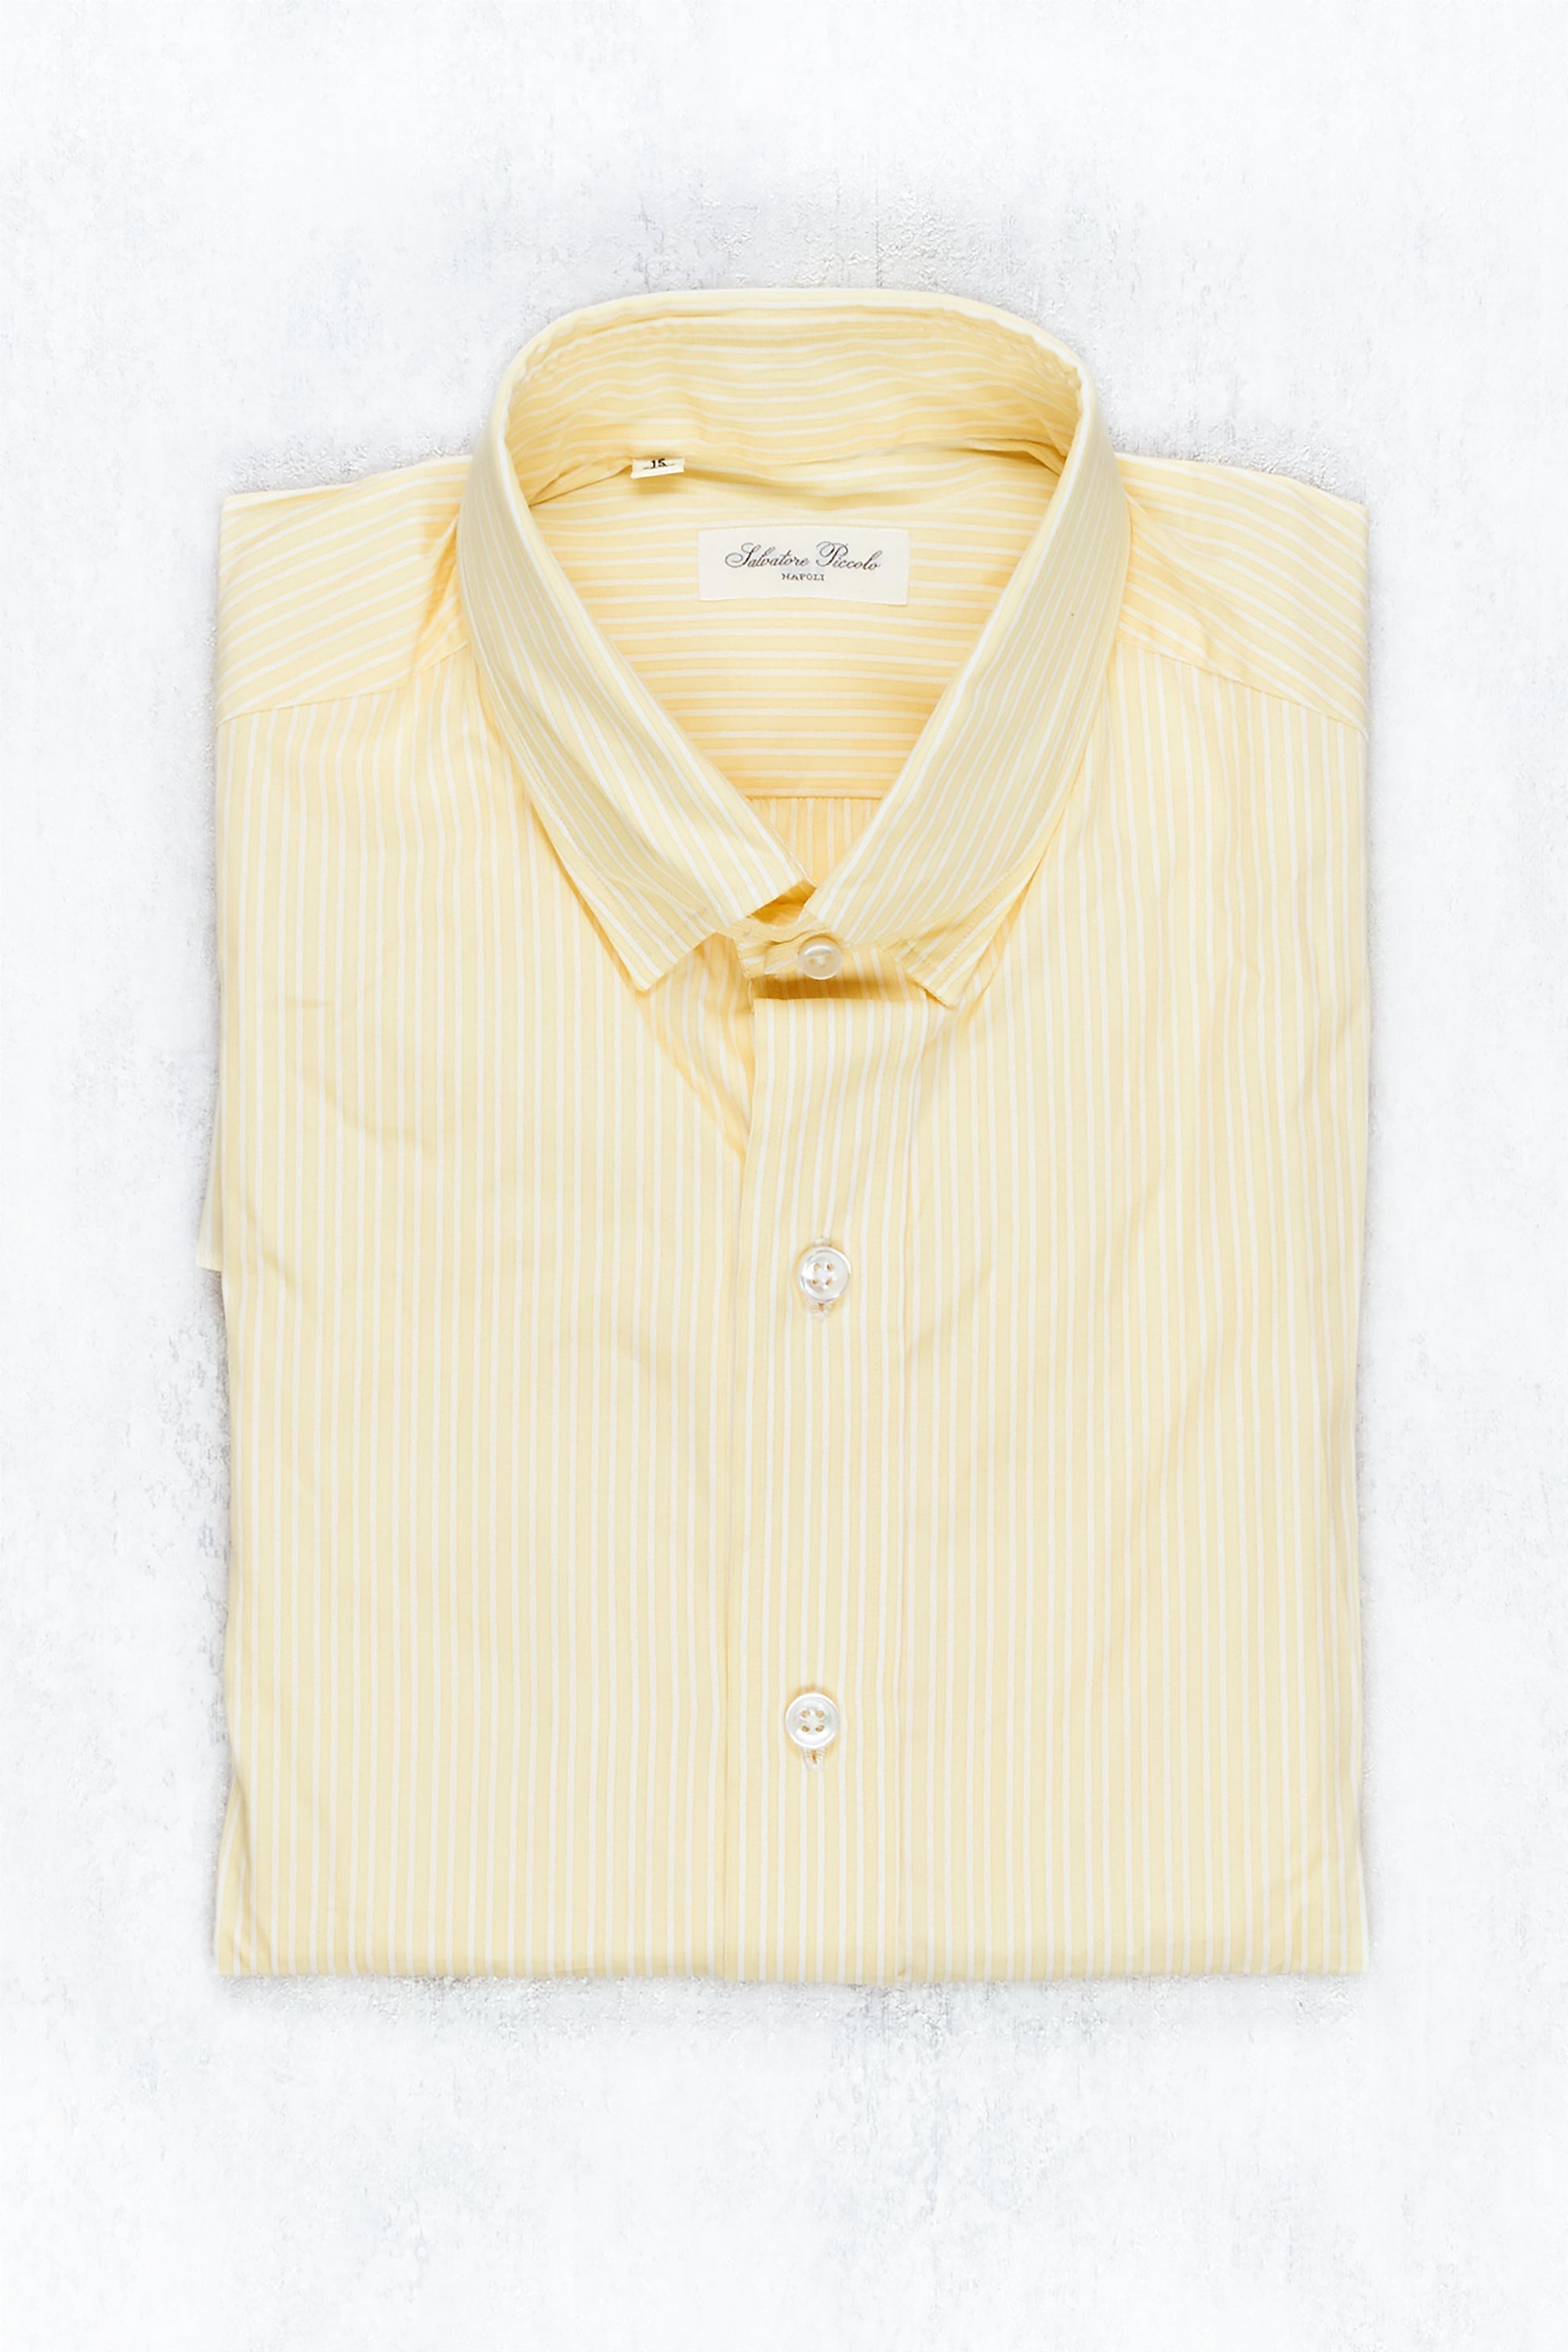 Salvatore Piccolo Yellow/White Stripe Cotton Spread Collar Shirt